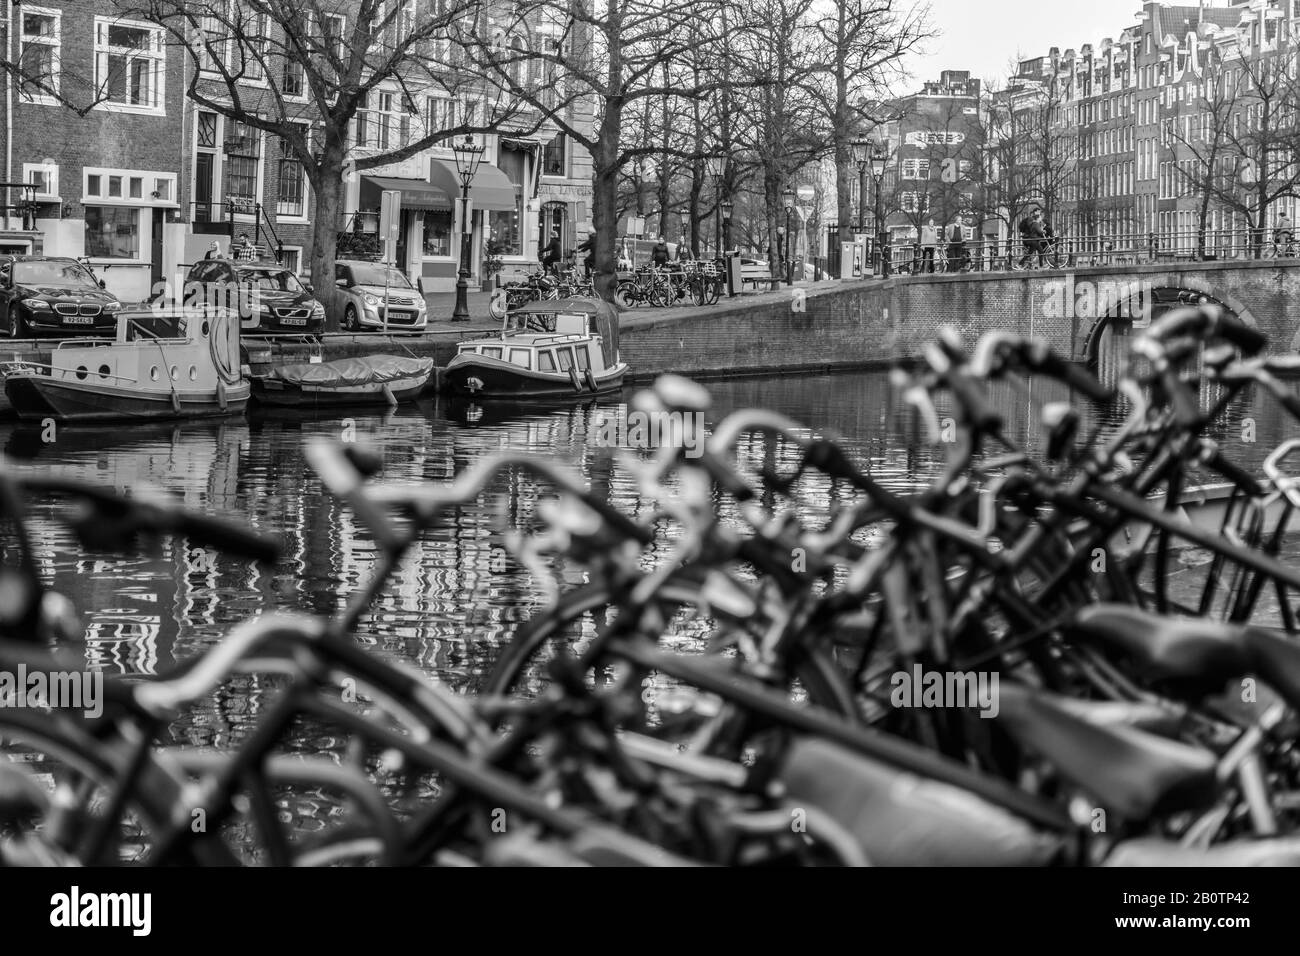 Fahrräder und Kanäle sind ein typischer Anblick von Amsterdam. Hausboote und Architektur aus dem 18. Jahrhundert säumen die Straßen von Wohngebieten. Stockfoto